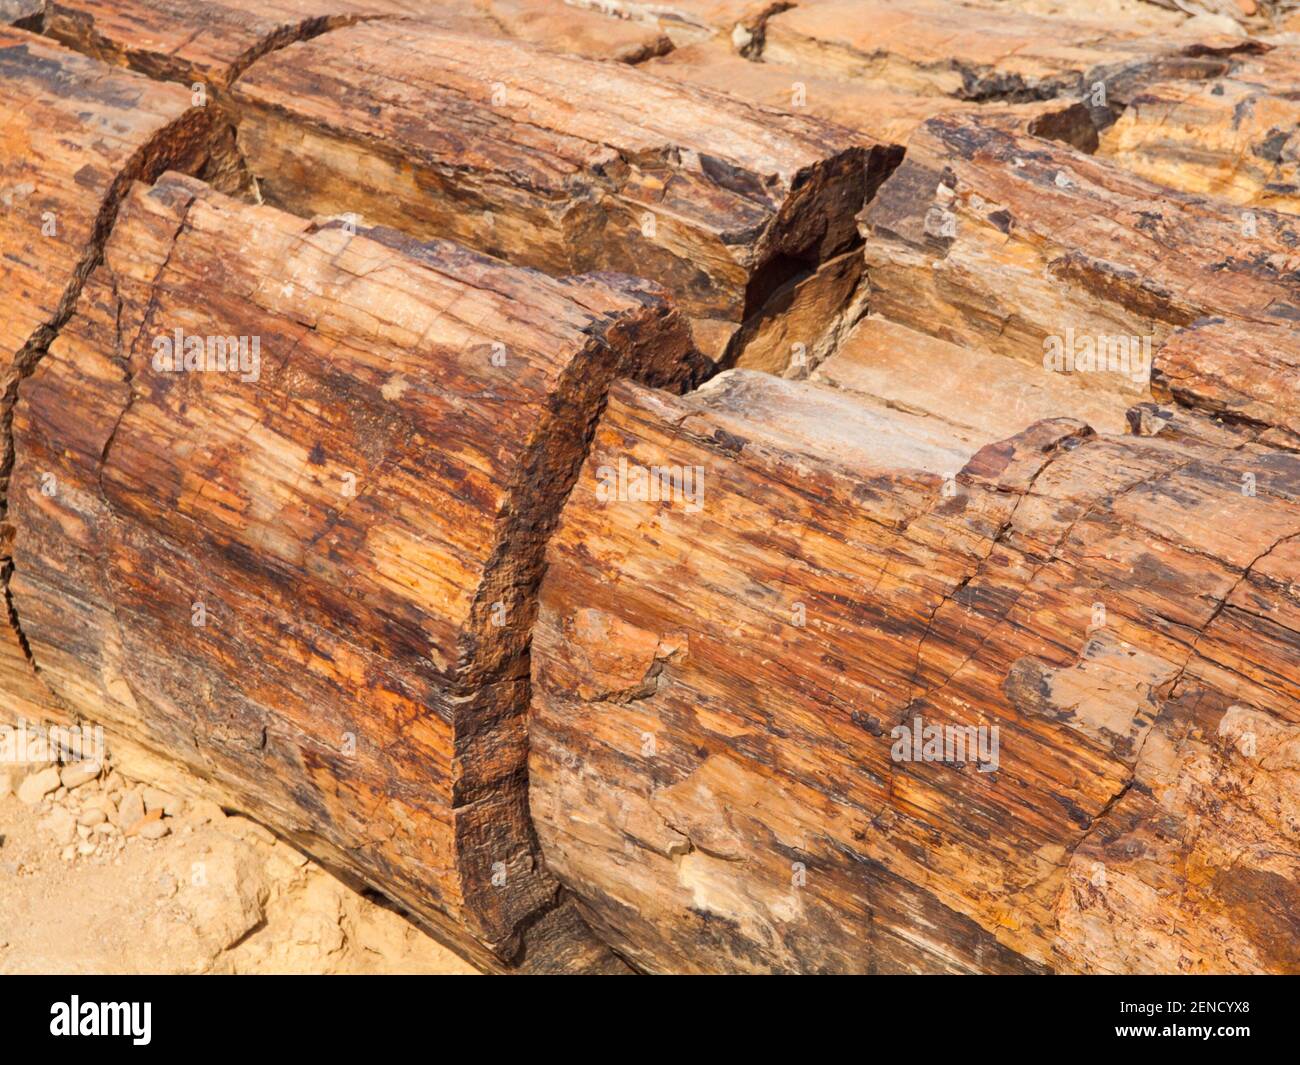 Un morceau de bois pétrifié, forêt pétrifiée à Damaraland, Namibie, Afrique Banque D'Images